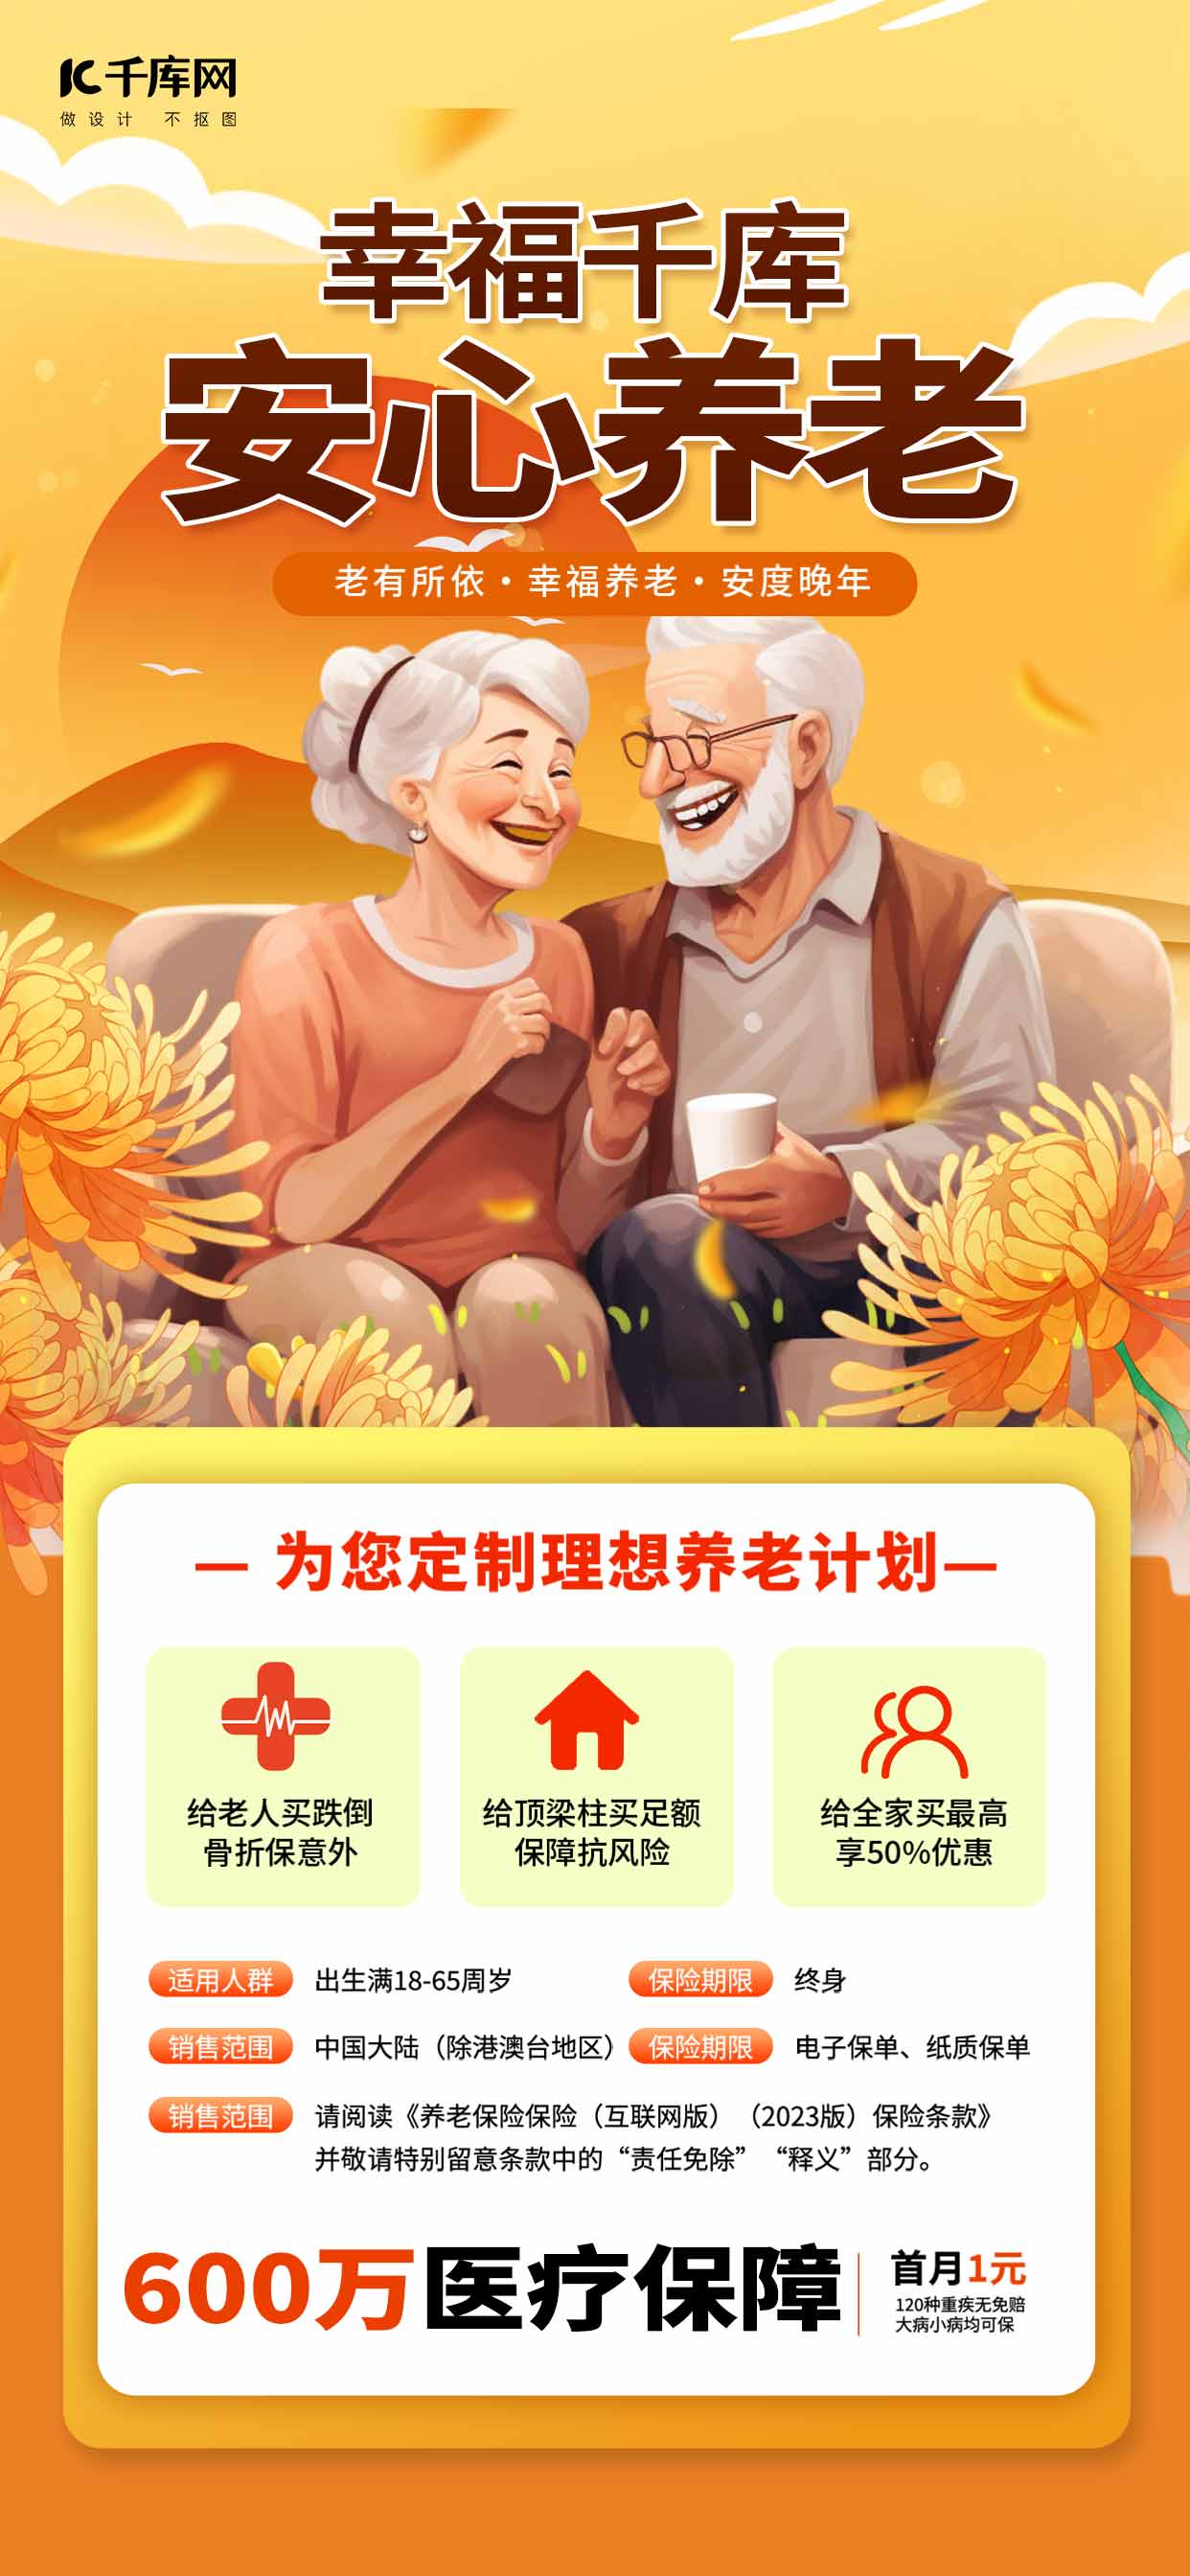 商业养老保险老人菊花橙色手绘海报手机端海报设计素材图片